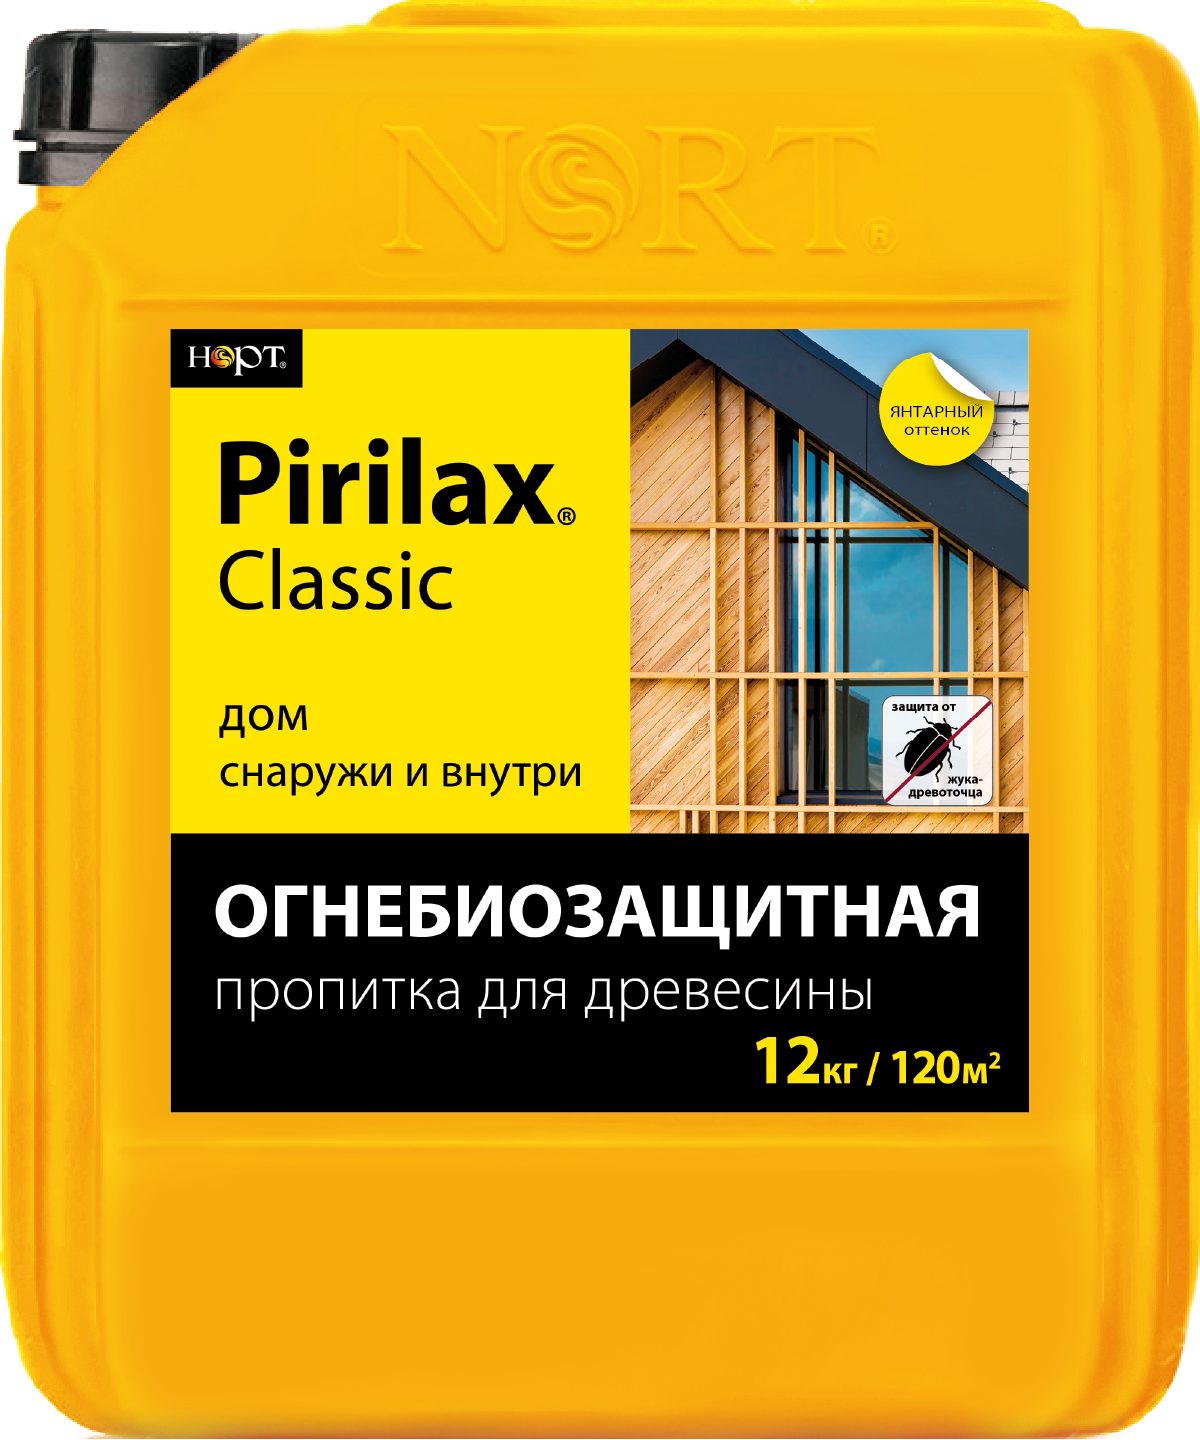 Product image for Пирилакс-Классик (Пирилакс 3000)